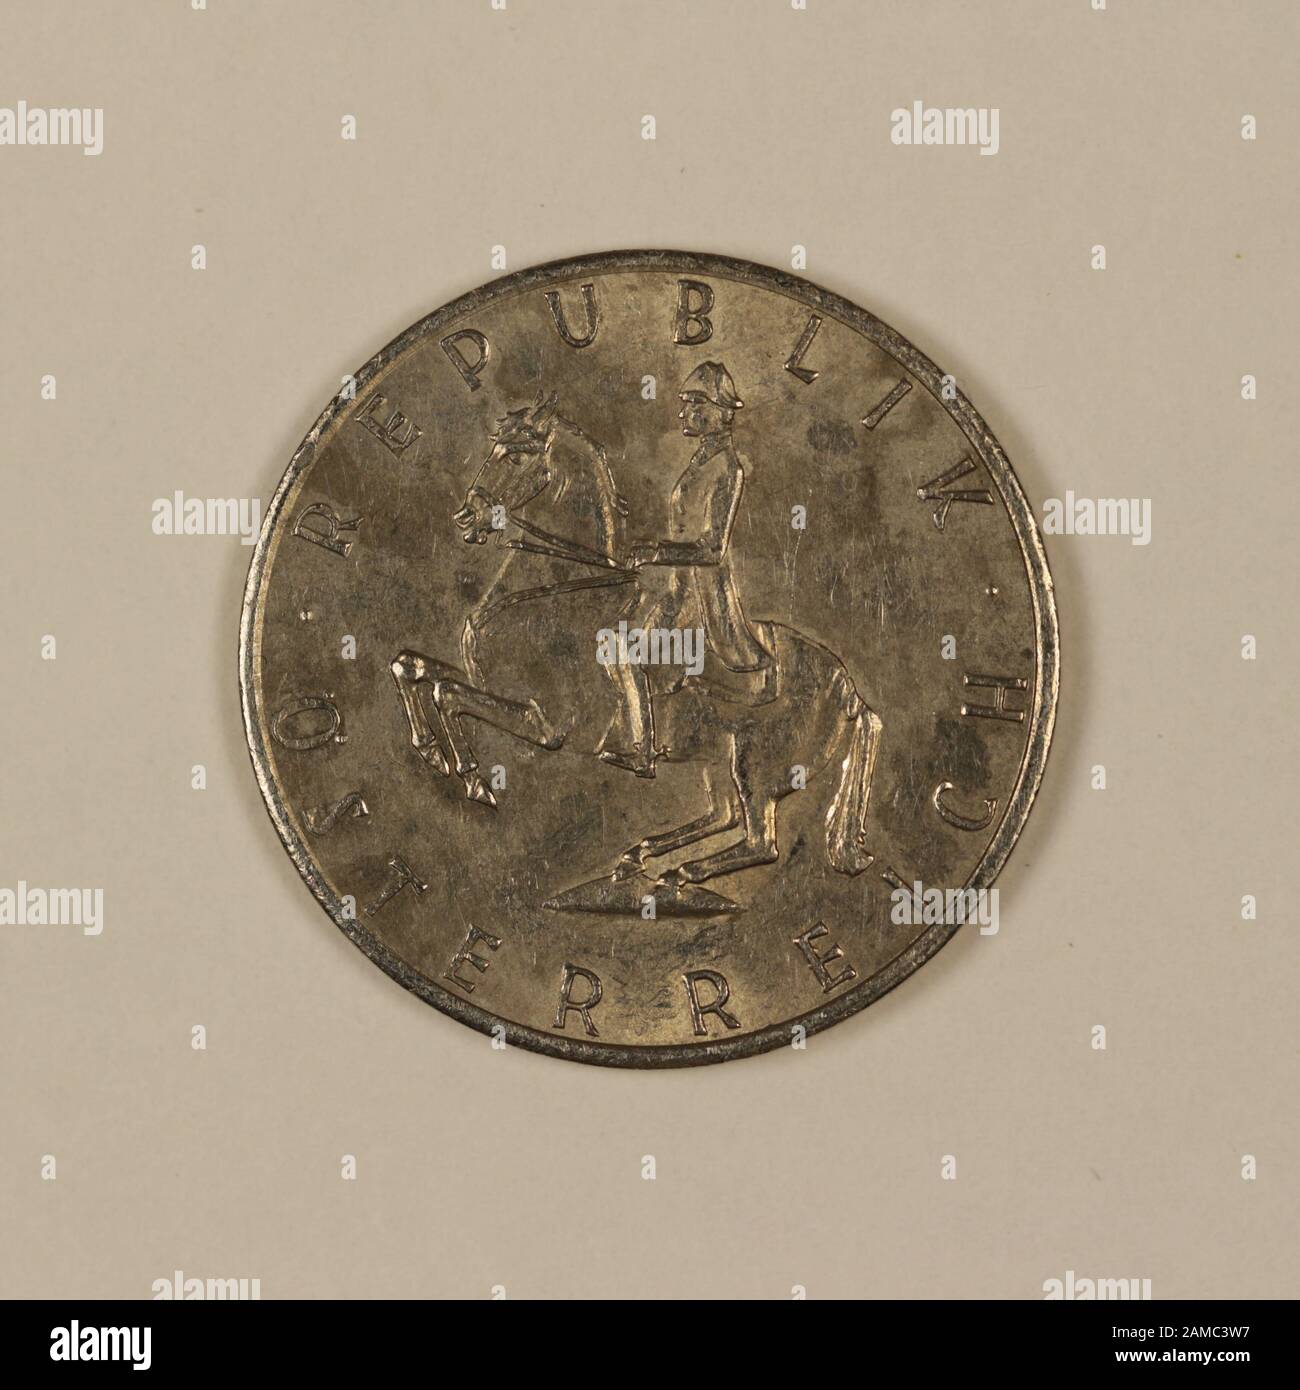 Rückseite einer ehemalien Österreichischen 5 Schilling Münze Foto Stock